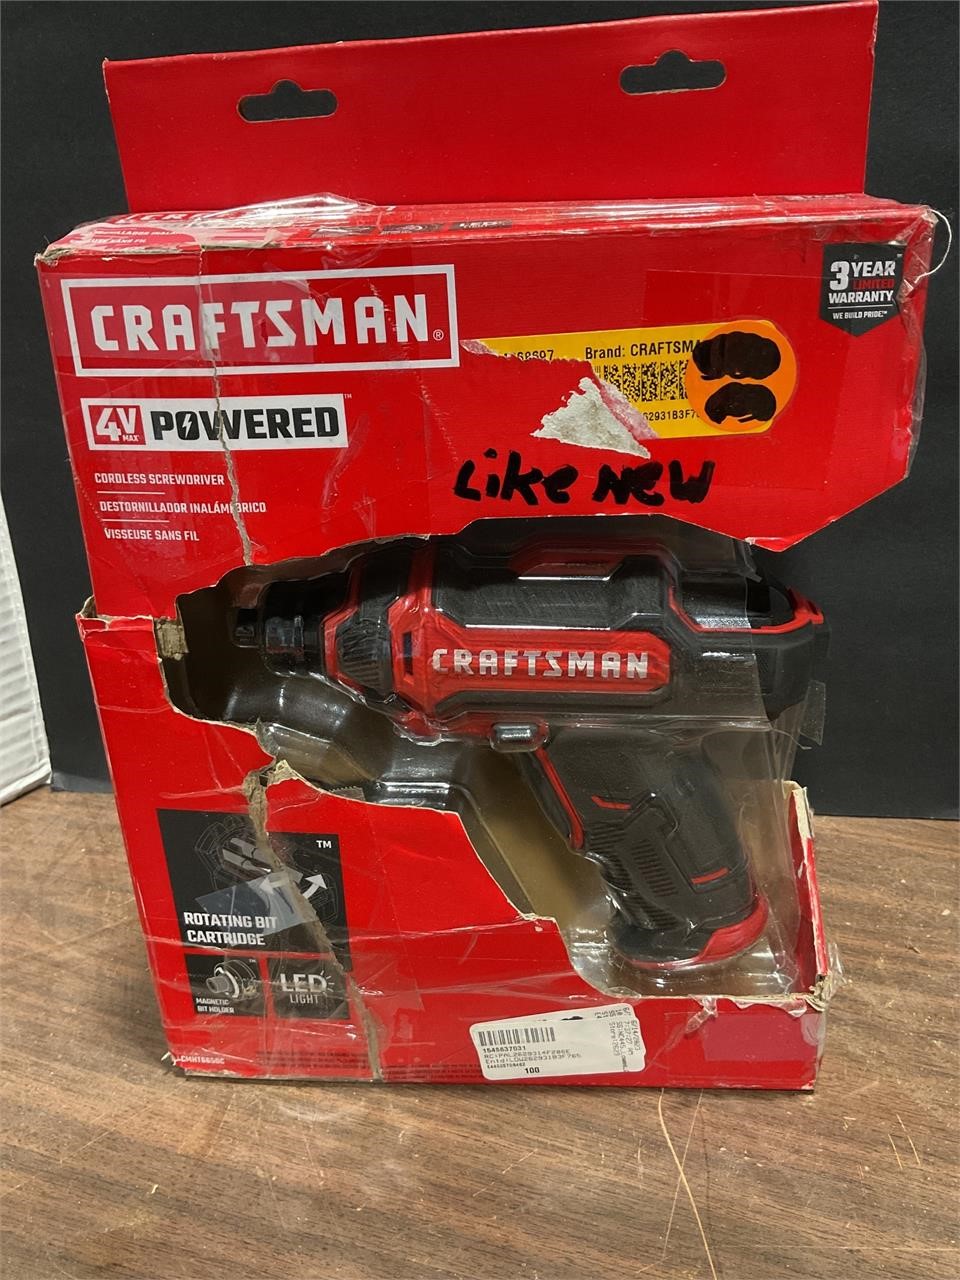 Craftsman 4 V cordless screwdriver